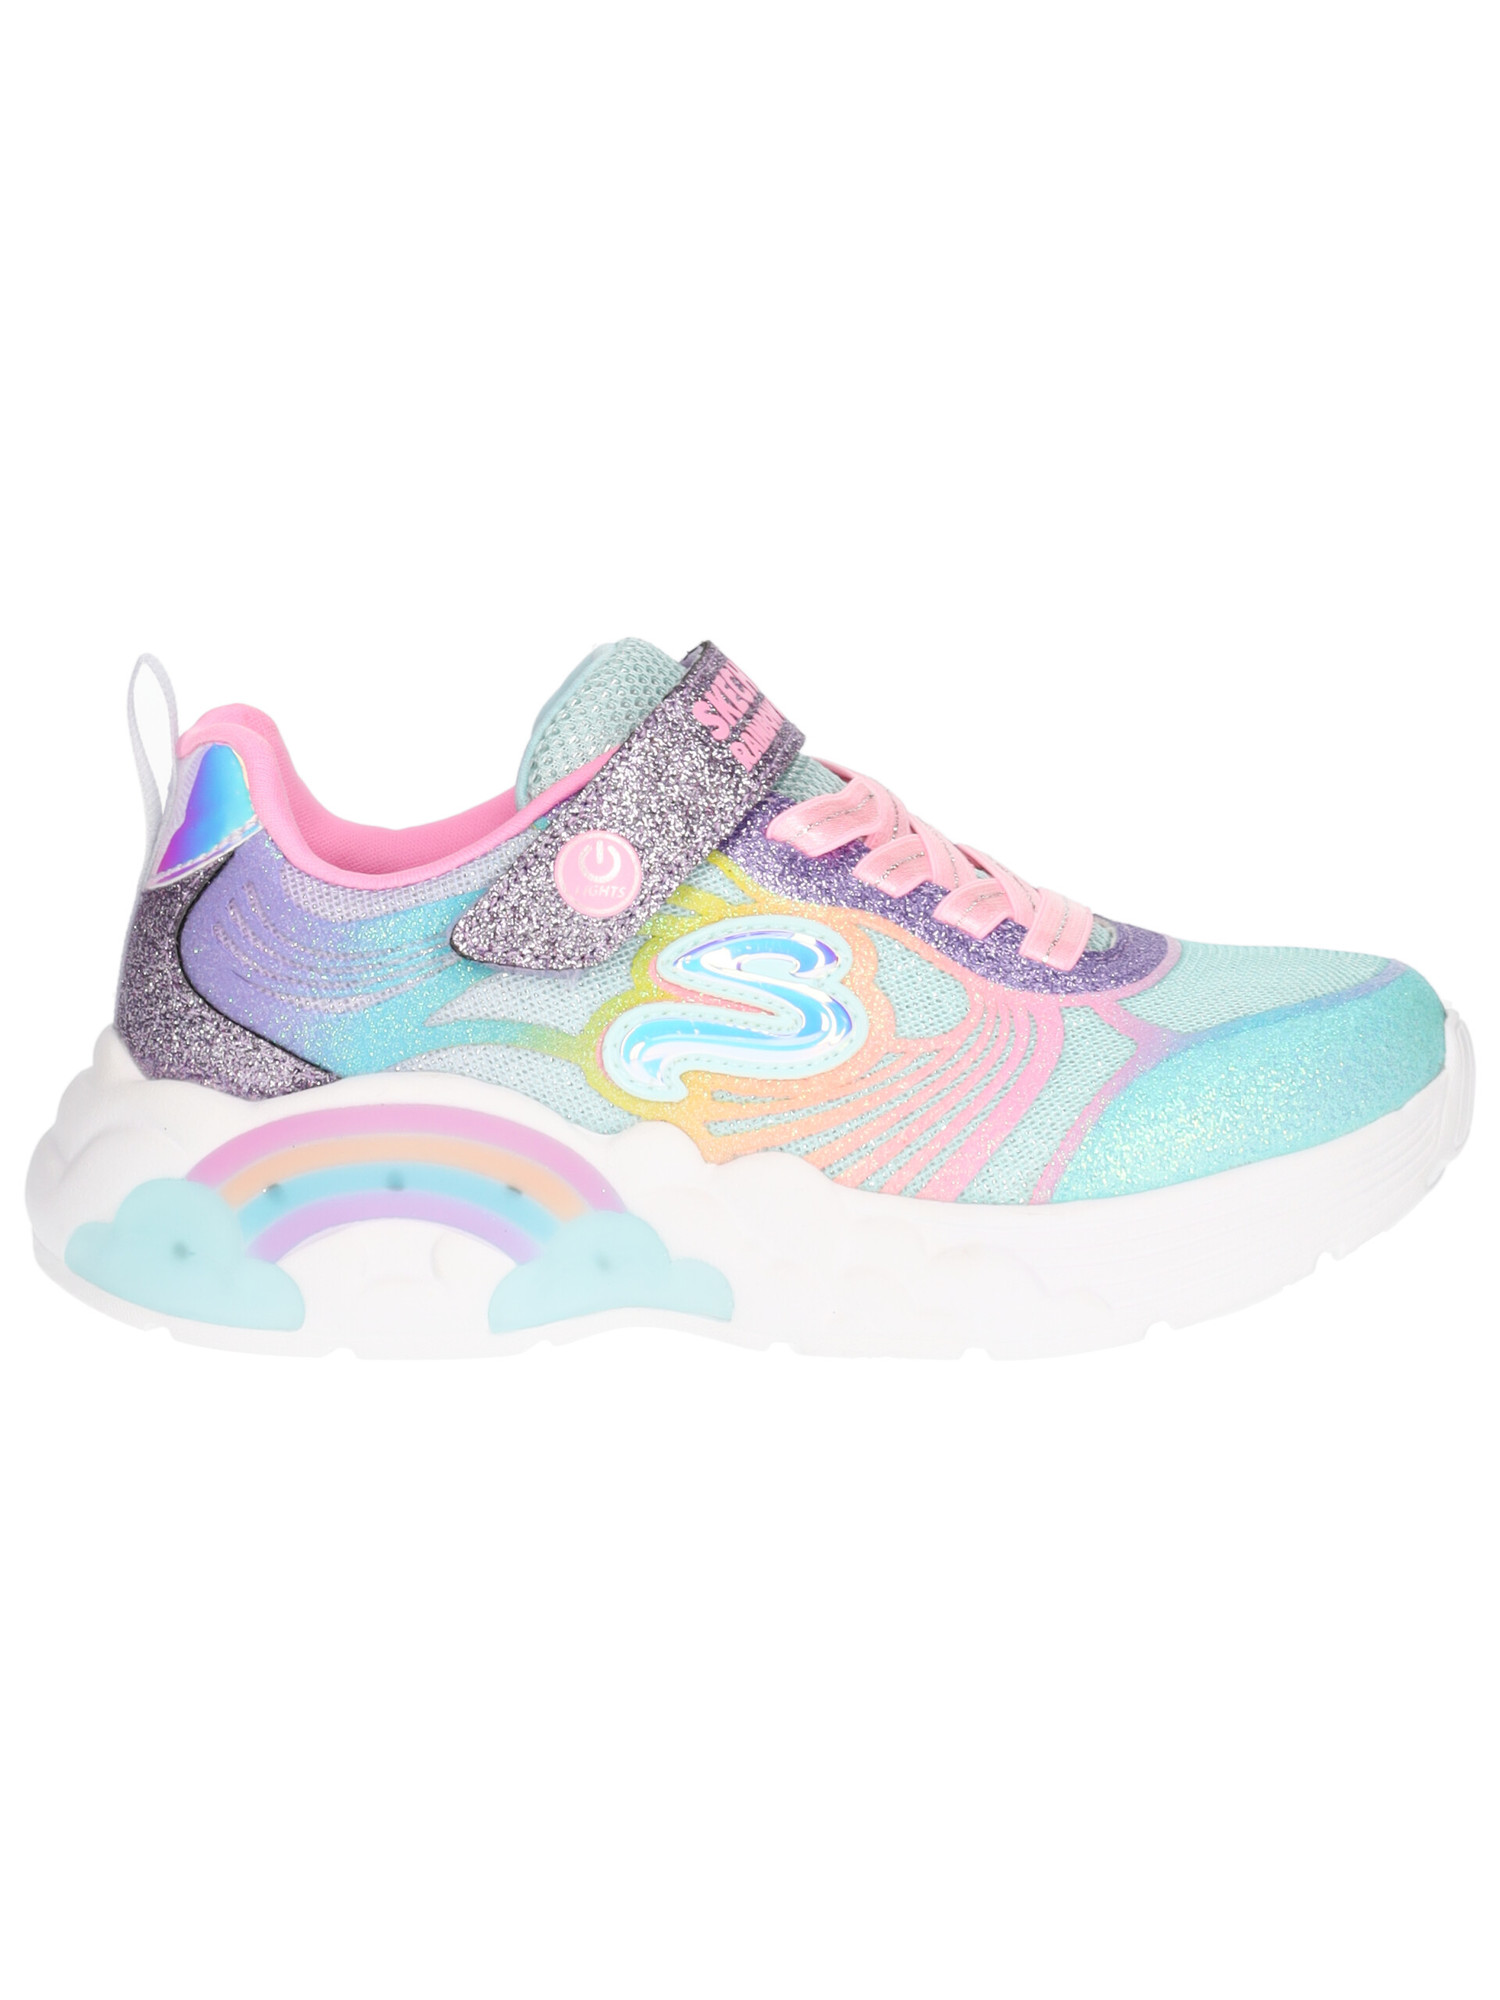 sneaker-skechers-arcobaleno-da-bambina-multicolor-2cf645